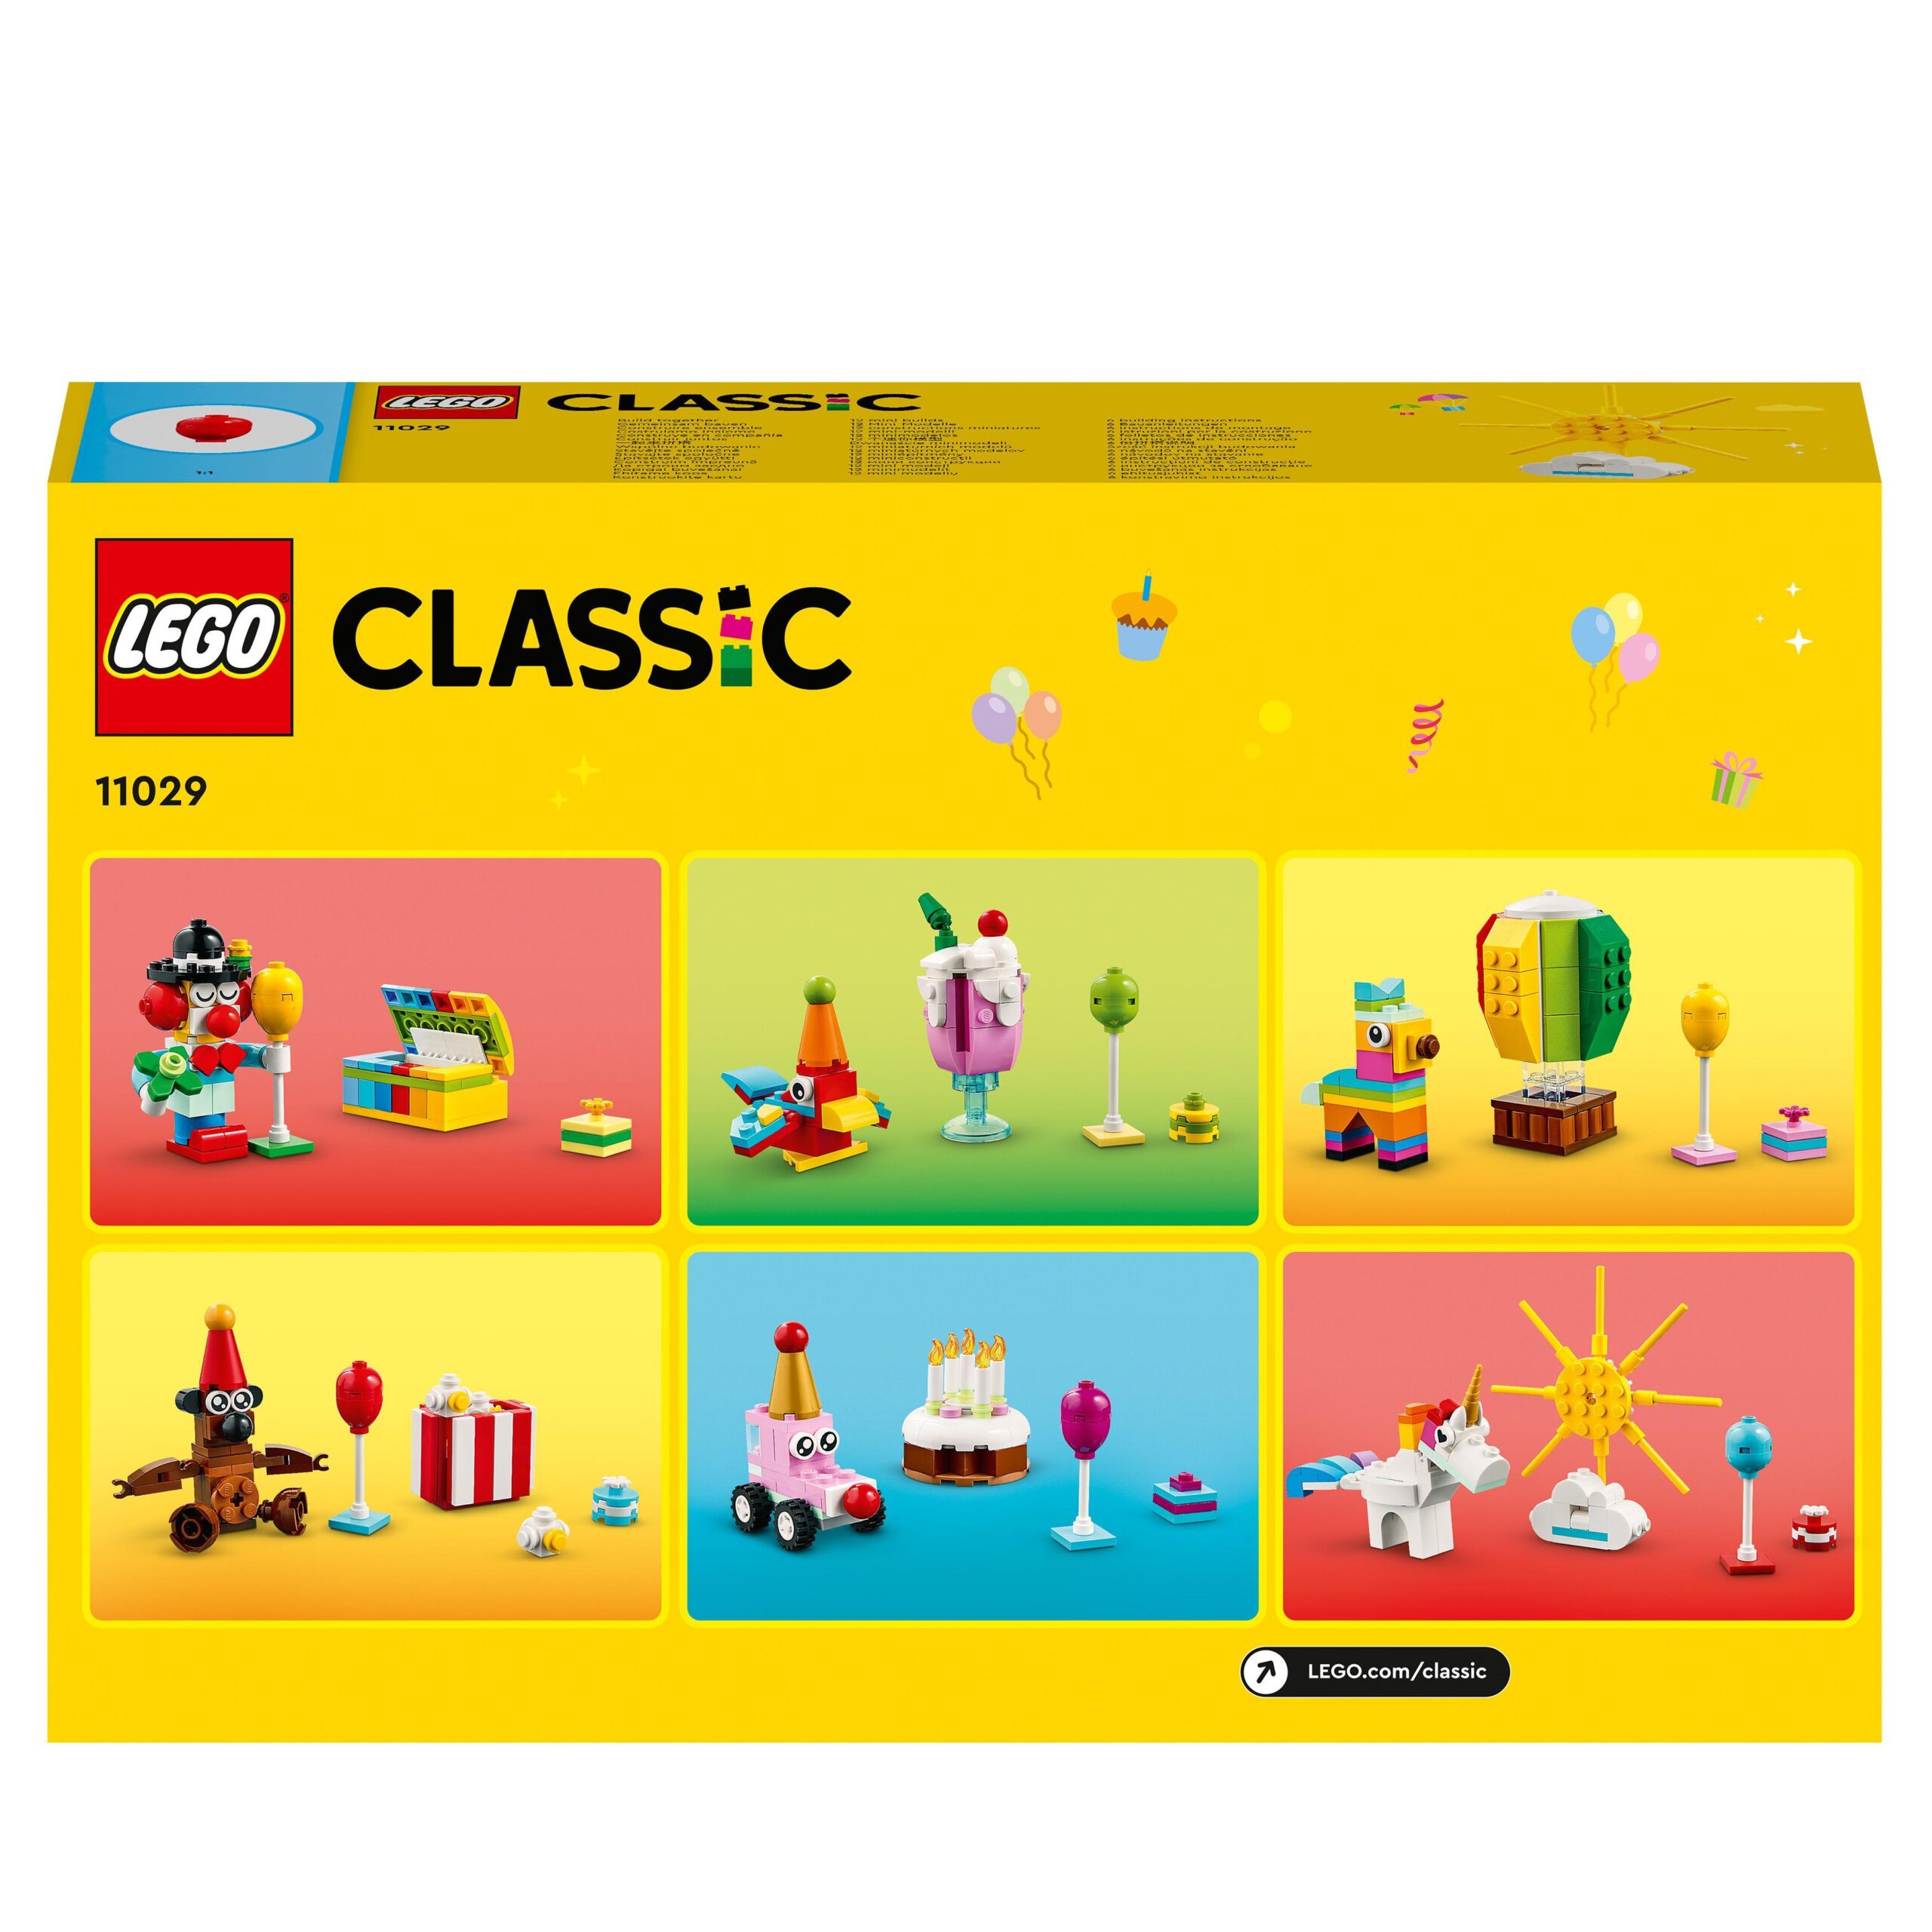 Lego classic 11029 party box creativa, giochi per bambini 5+ da condividere in famiglia con 12 mini-costruzioni in mattoncini - LEGO CLASSIC